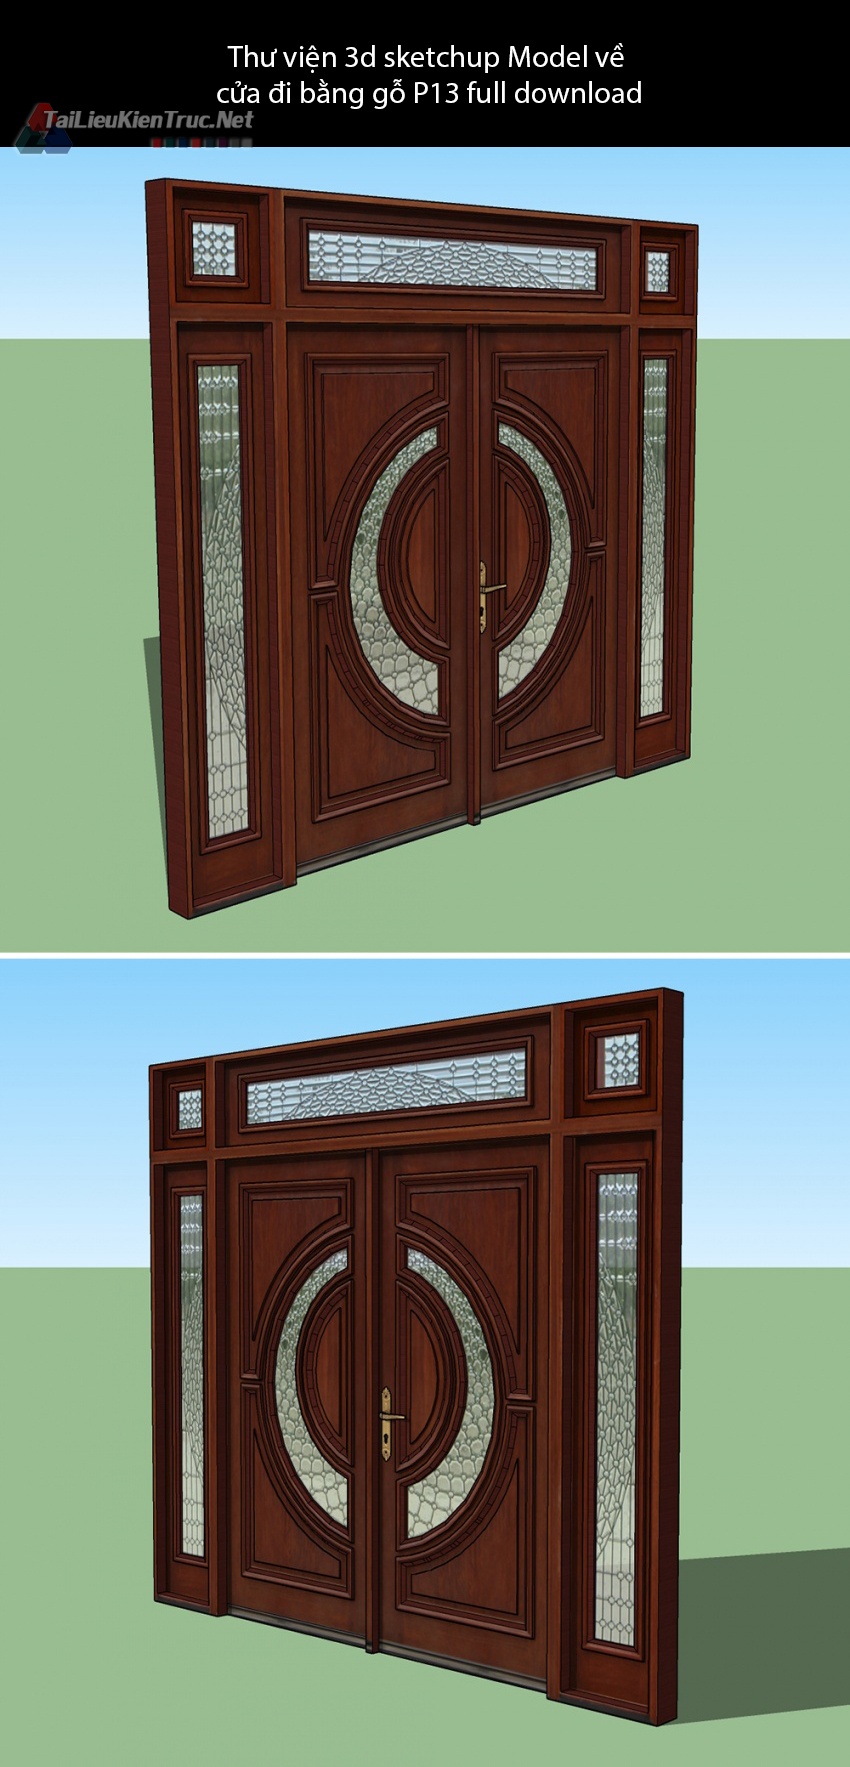 Thư viện 3d sketchup Model về cửa đi bằng gỗ P13 full download